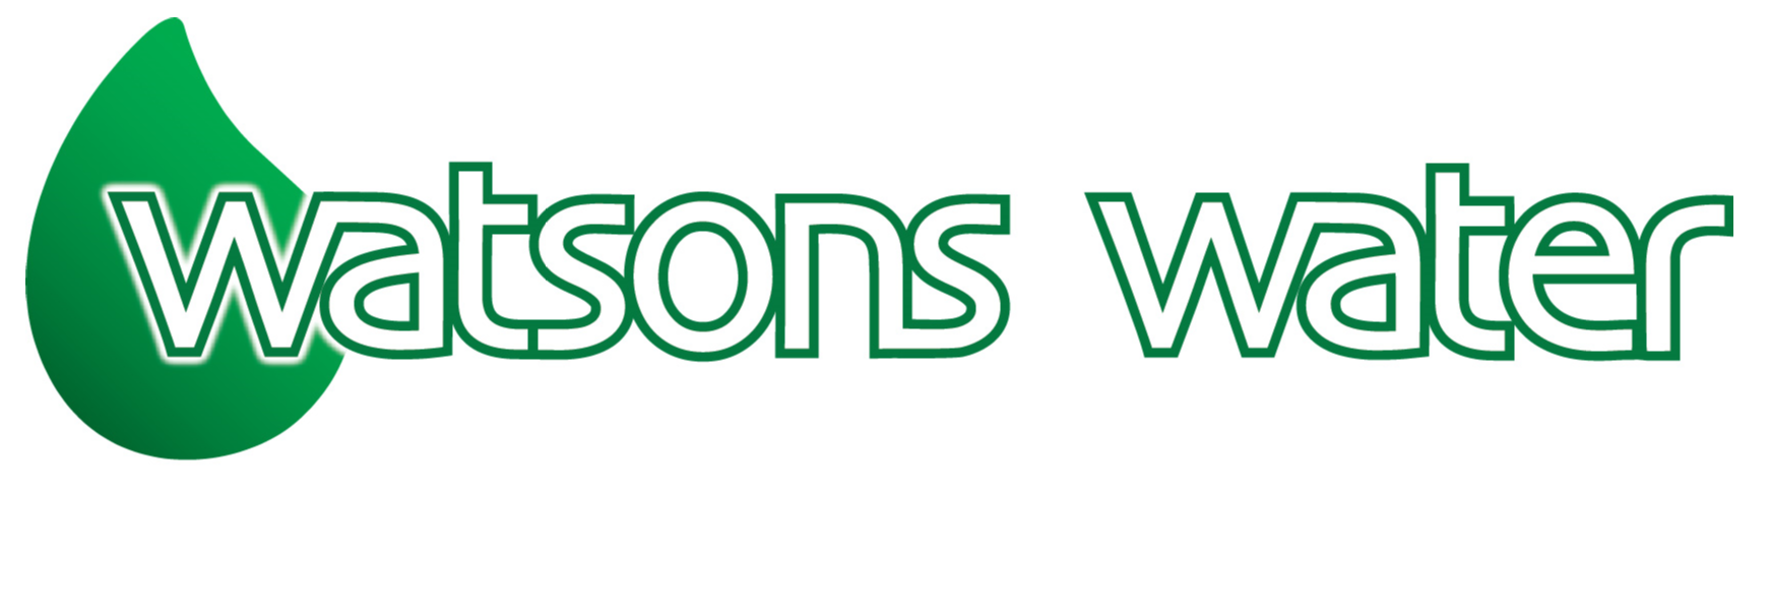 A S Watson & Co Ltd - Watsons Water